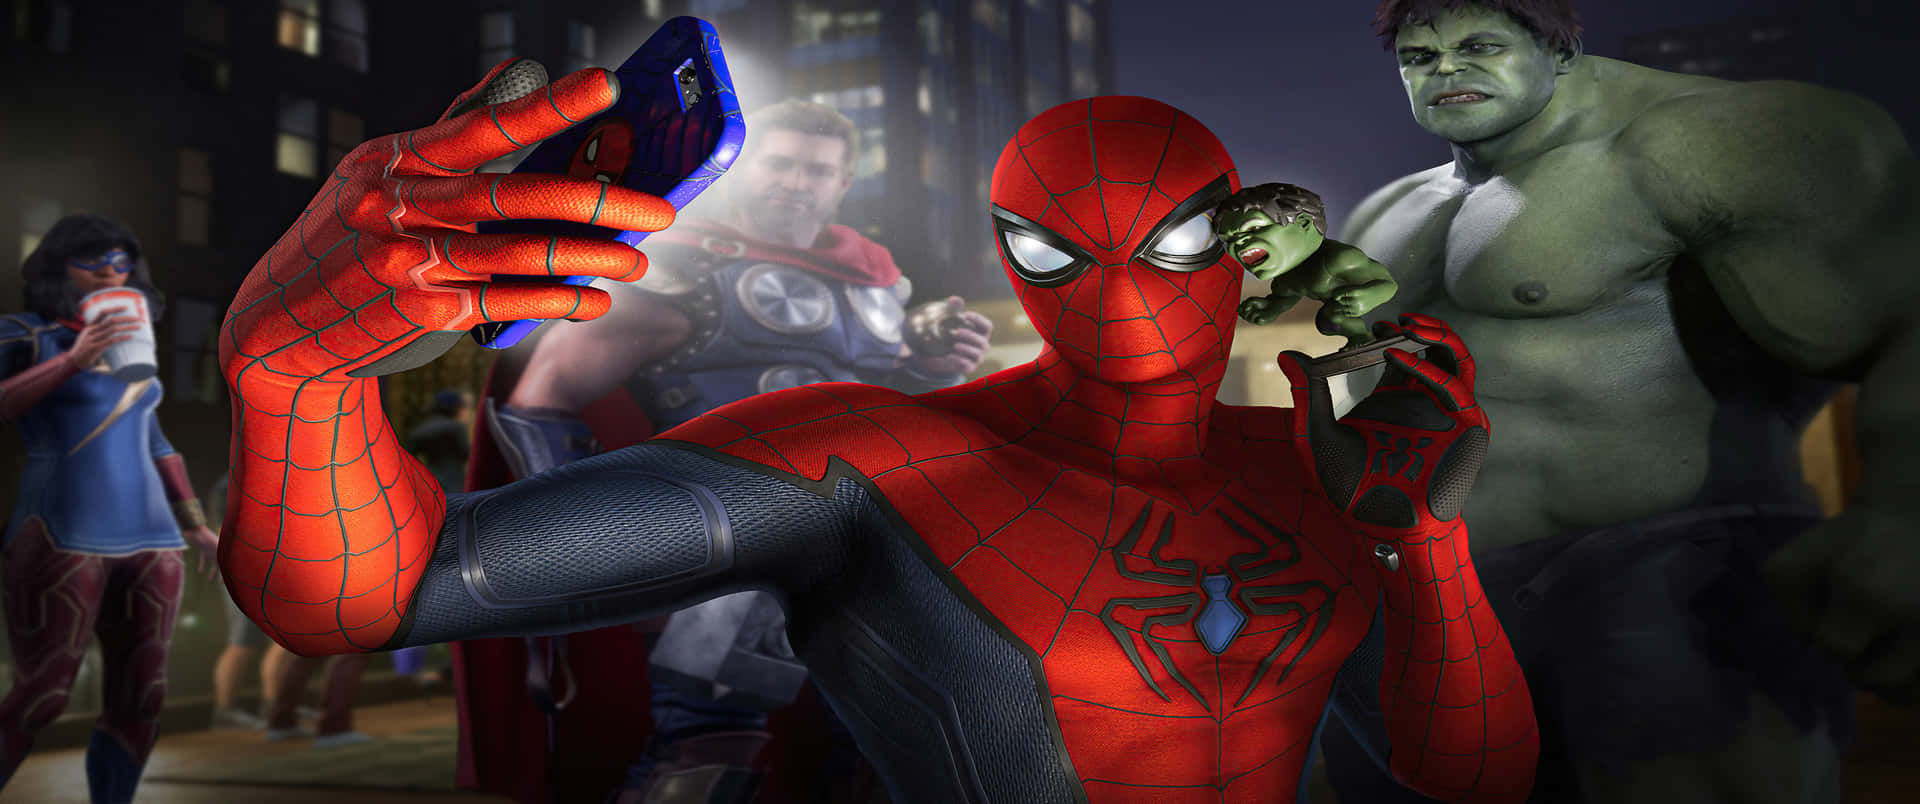 Spider Man Selfie Marvel 3440x1440 Background